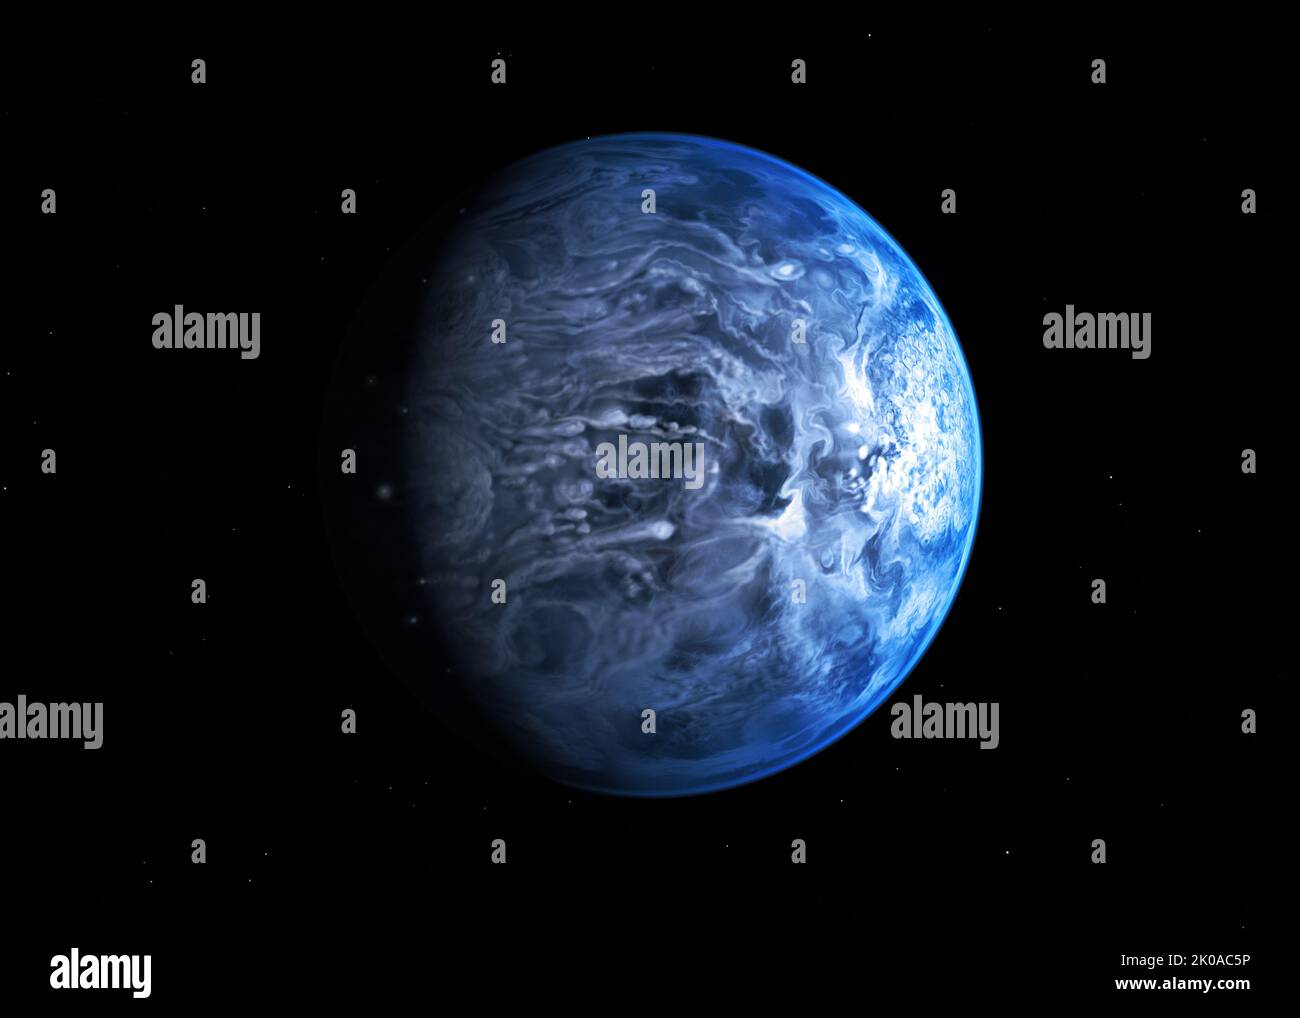 Rains of Terror auf Exoplanet HD. Künstlerkonzept des exoplaneten HD 189733b. Für das menschliche Auge sieht dieser ferne Planet leuchtend blau aus. Aber die kobaltblaue Farbe stammt nicht aus der Reflexion eines tropischen Ozeans, wie auf der Erde, sondern aus einer dunstigen, geblasen Atmosphäre mit hohen Wolken, die mit Silikatpartikeln übersät sind Stockfoto